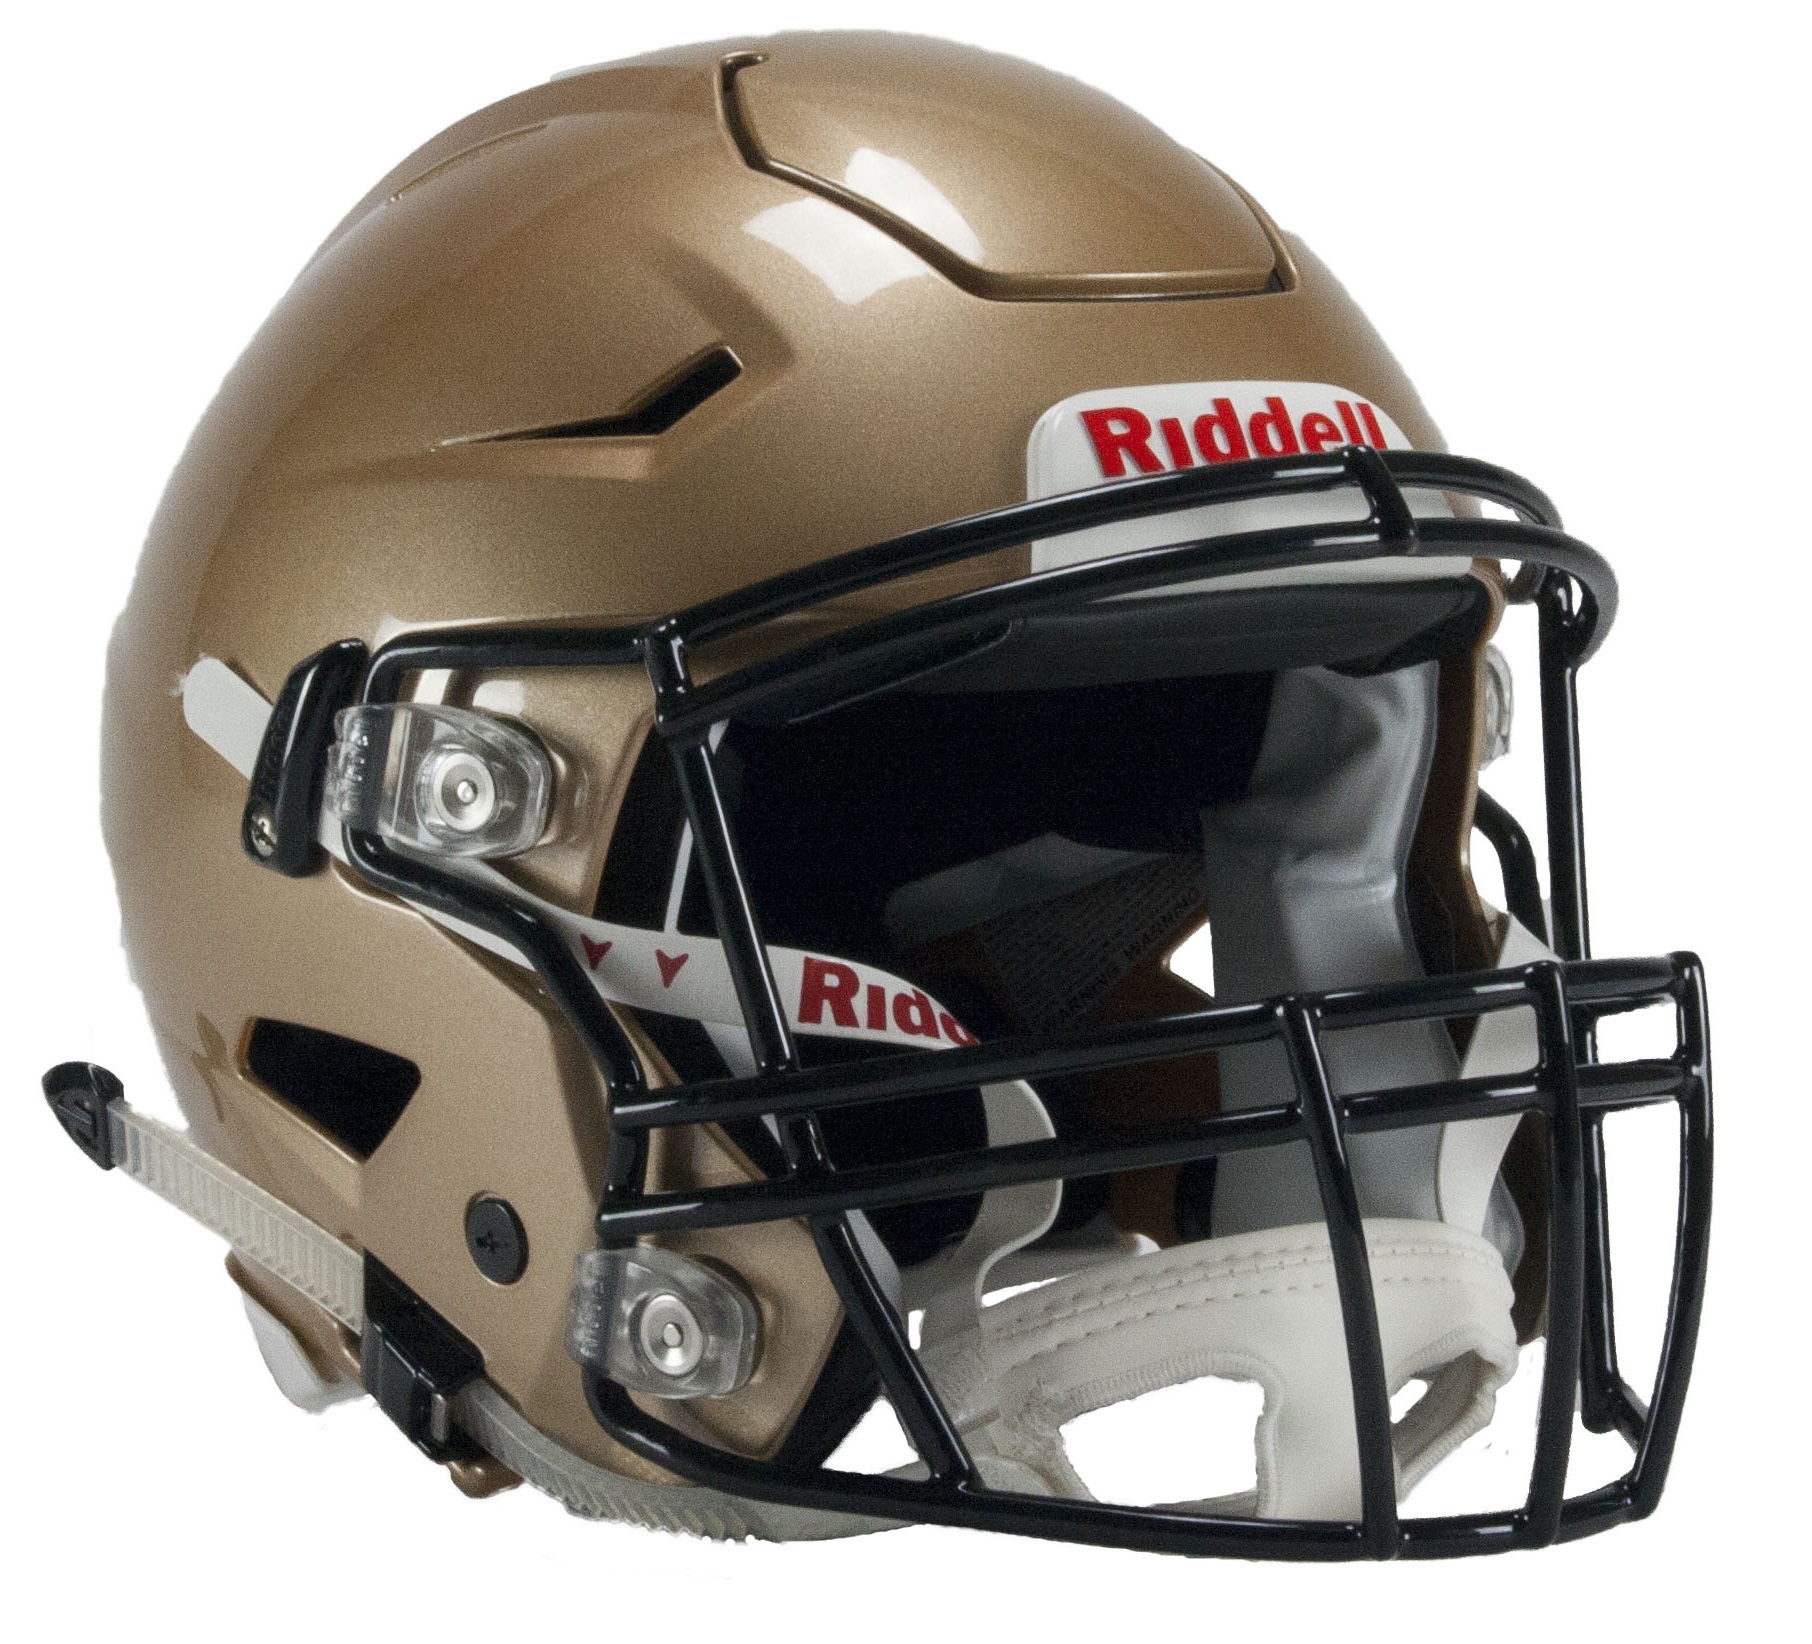 Riddell Lacrosse Helmet Size Chart